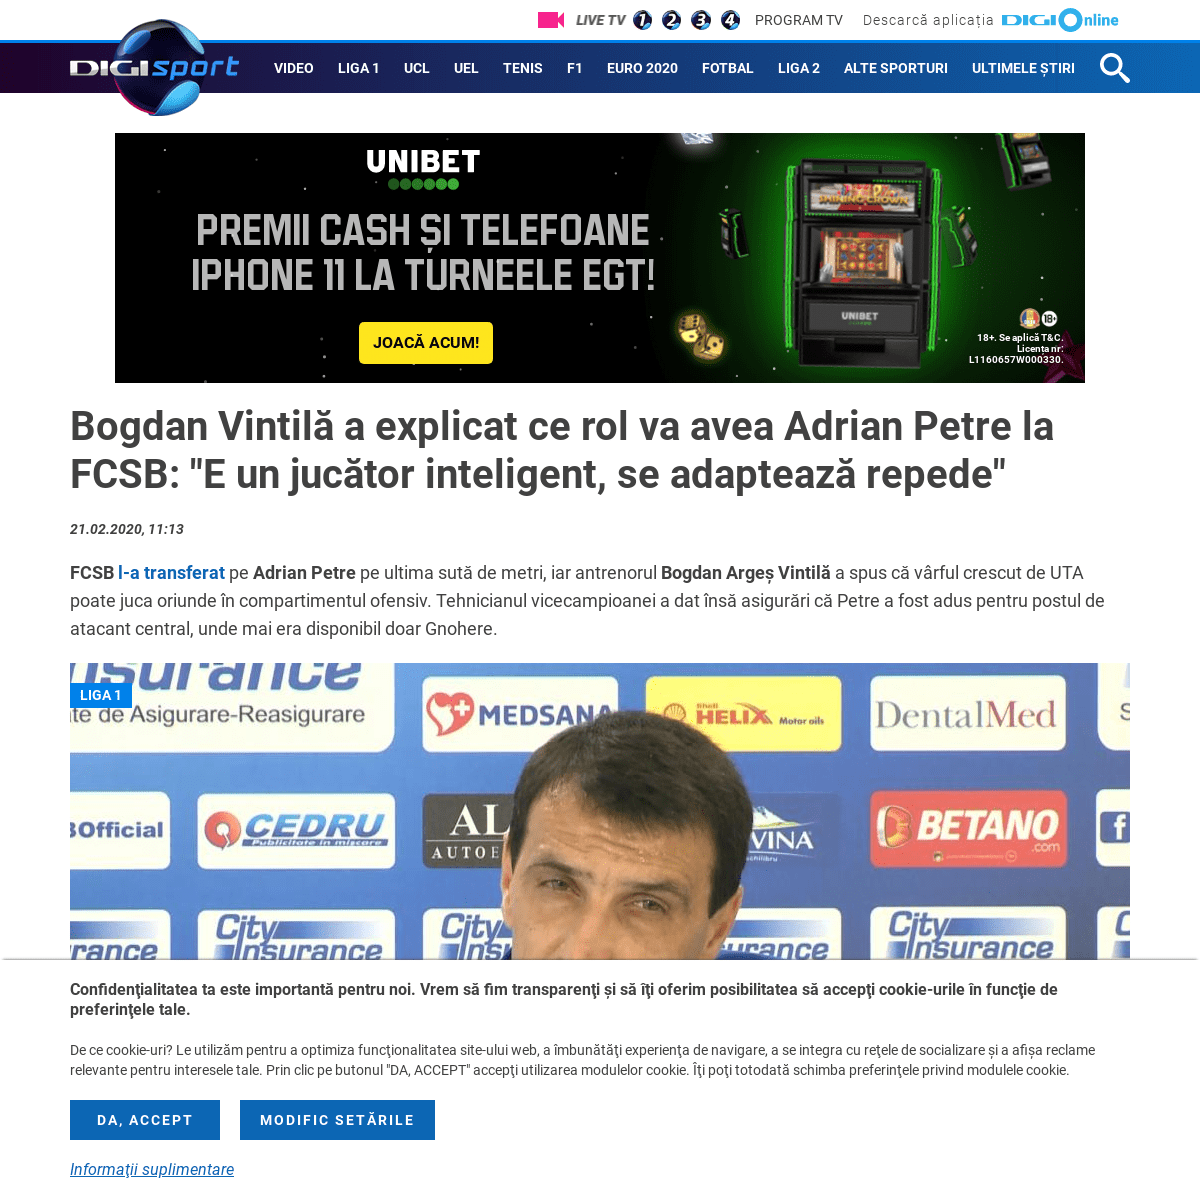 A complete backup of www.digisport.ro/fotbal/liga-1/bogdan-vintila-a-explicat-ce-rol-va-avea-adrian-petre-la-fcsb-e-un-jucator-i